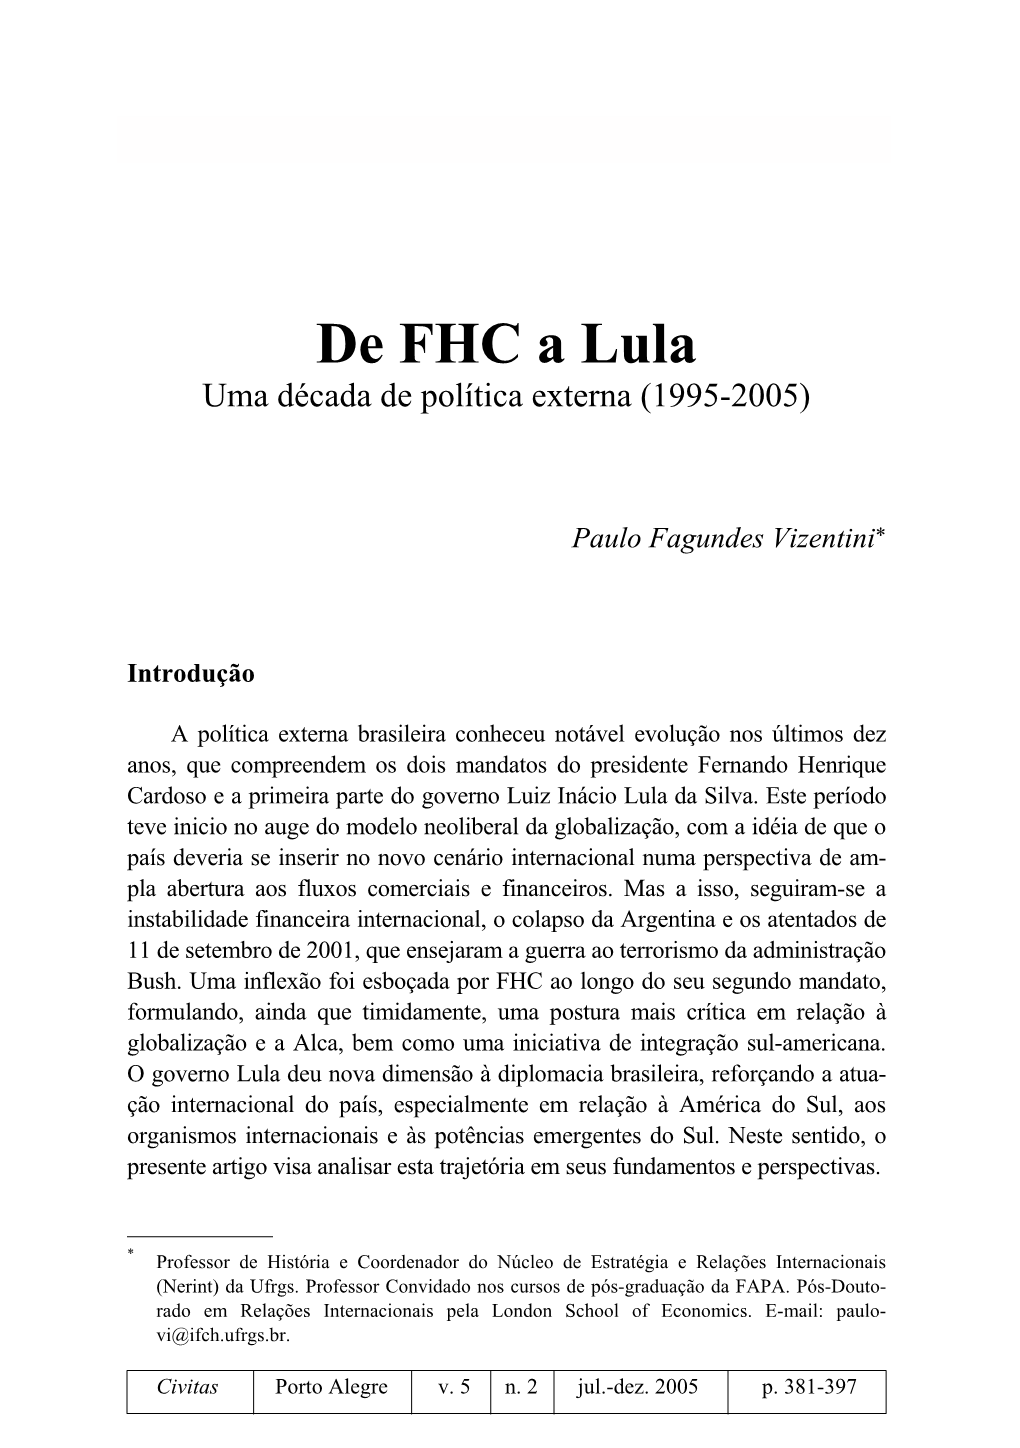 De FHC a Lula Uma Década De Política Externa (1995-2005)